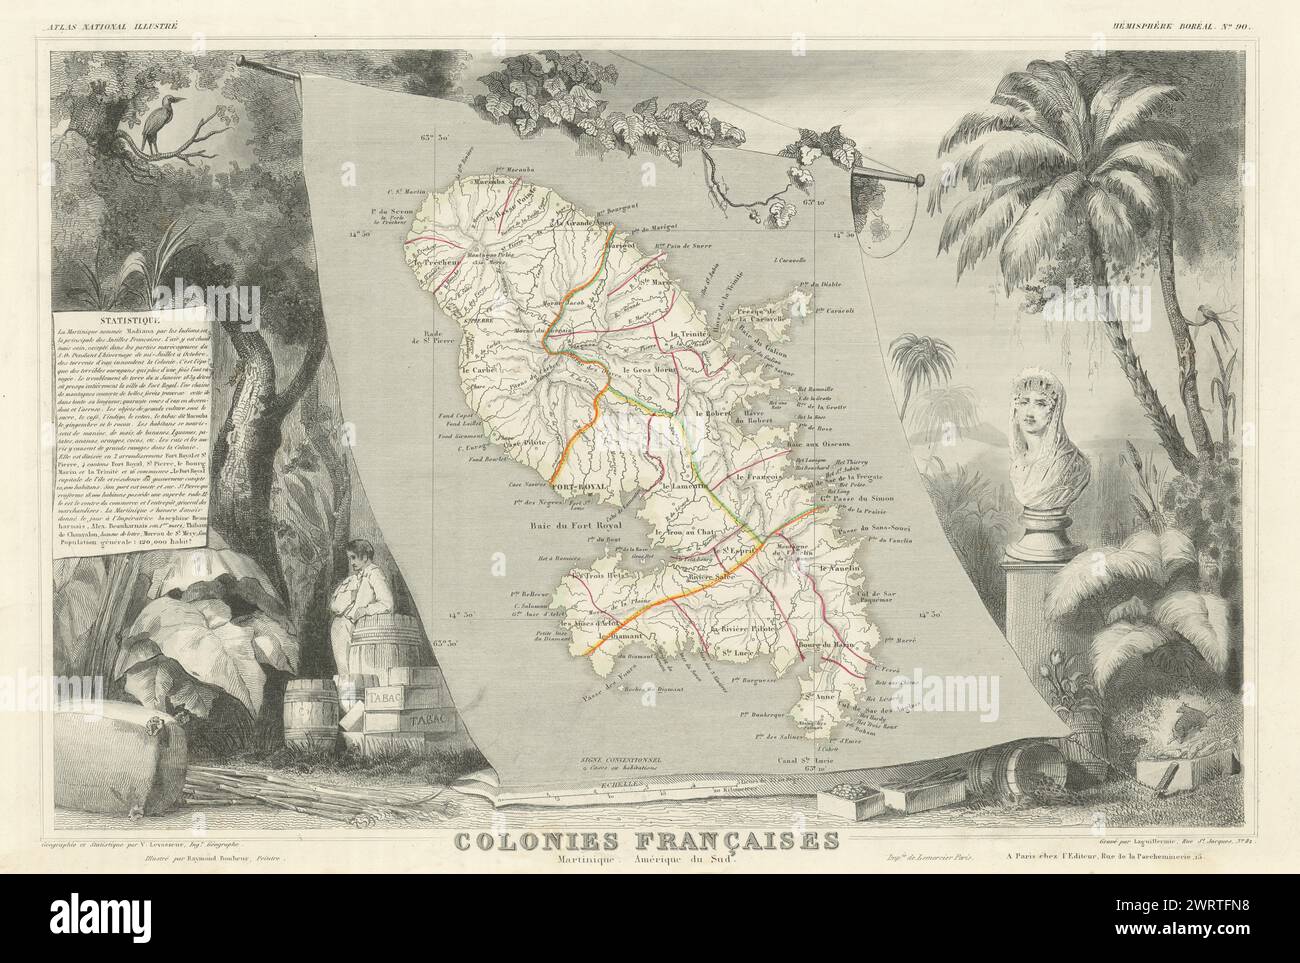 COLONIES FRANÇAISES MARTINIQUE AMÉRIQUE DU SUD. West Indies.LEVASSEUR 1856 carte Banque D'Images